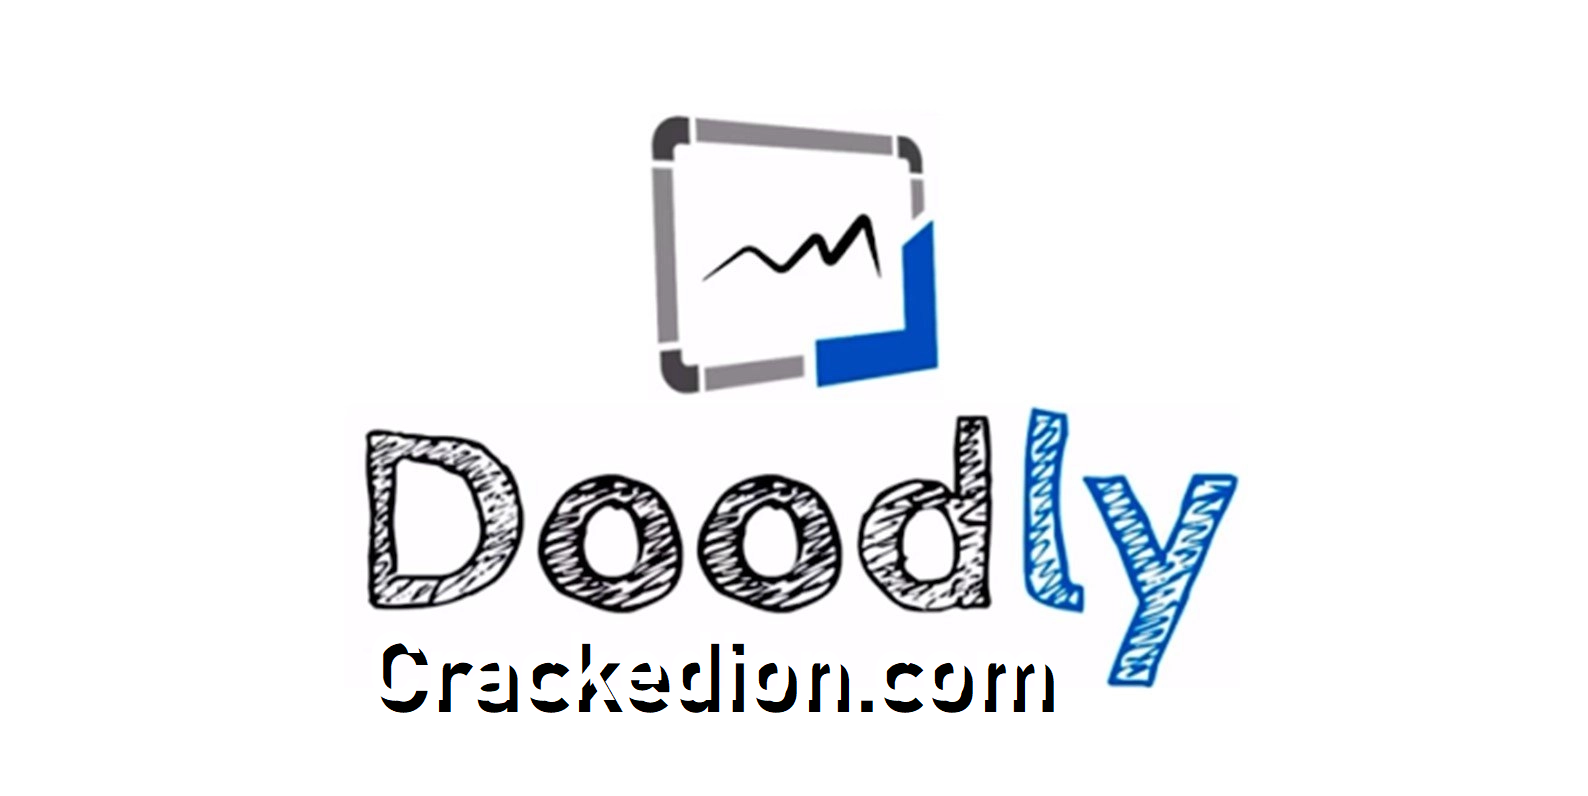 Doodly Software Free Download 64 Bit Wondows